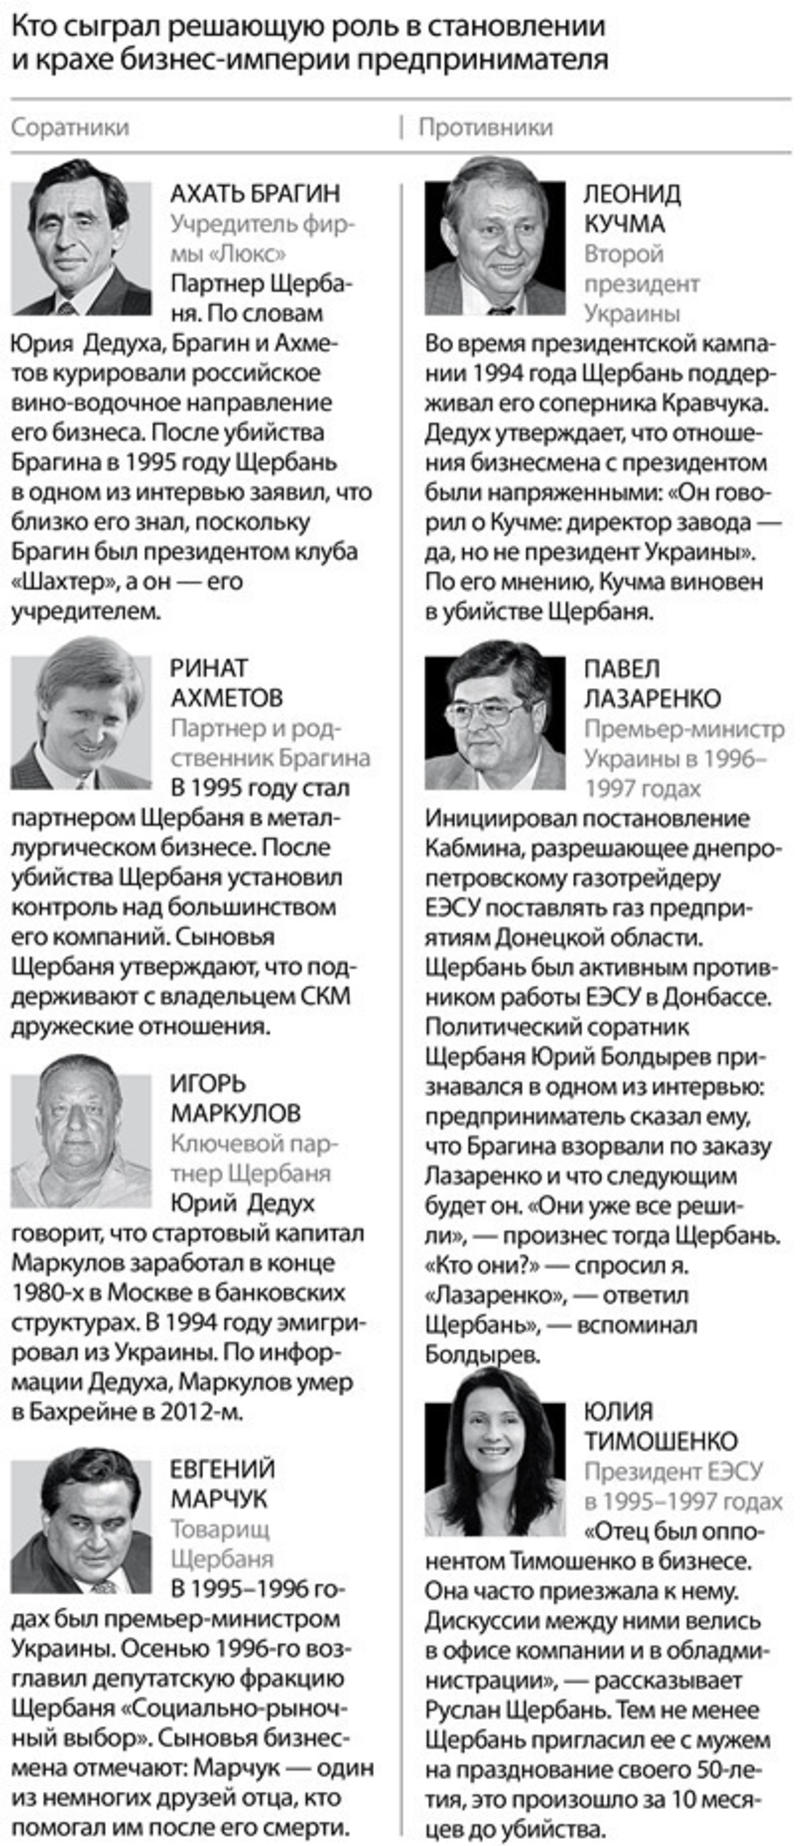 Жизнь и смерть Евгения Щербаня: загадки первого миллардера Украины / Forbes.ua